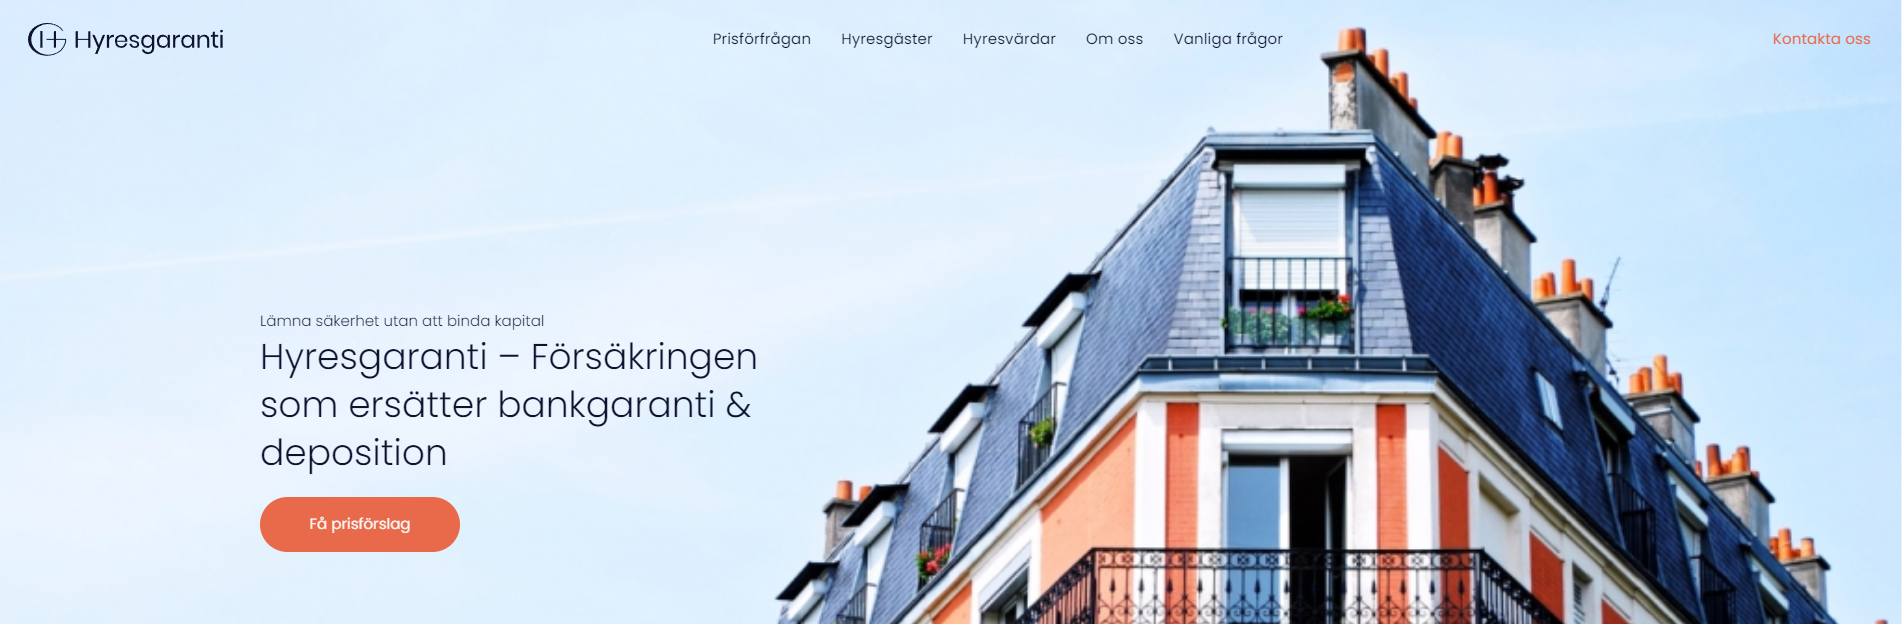 Hyresgaranti: Revolutionerar Hyresmarknaden för Företag - screenshot of the website